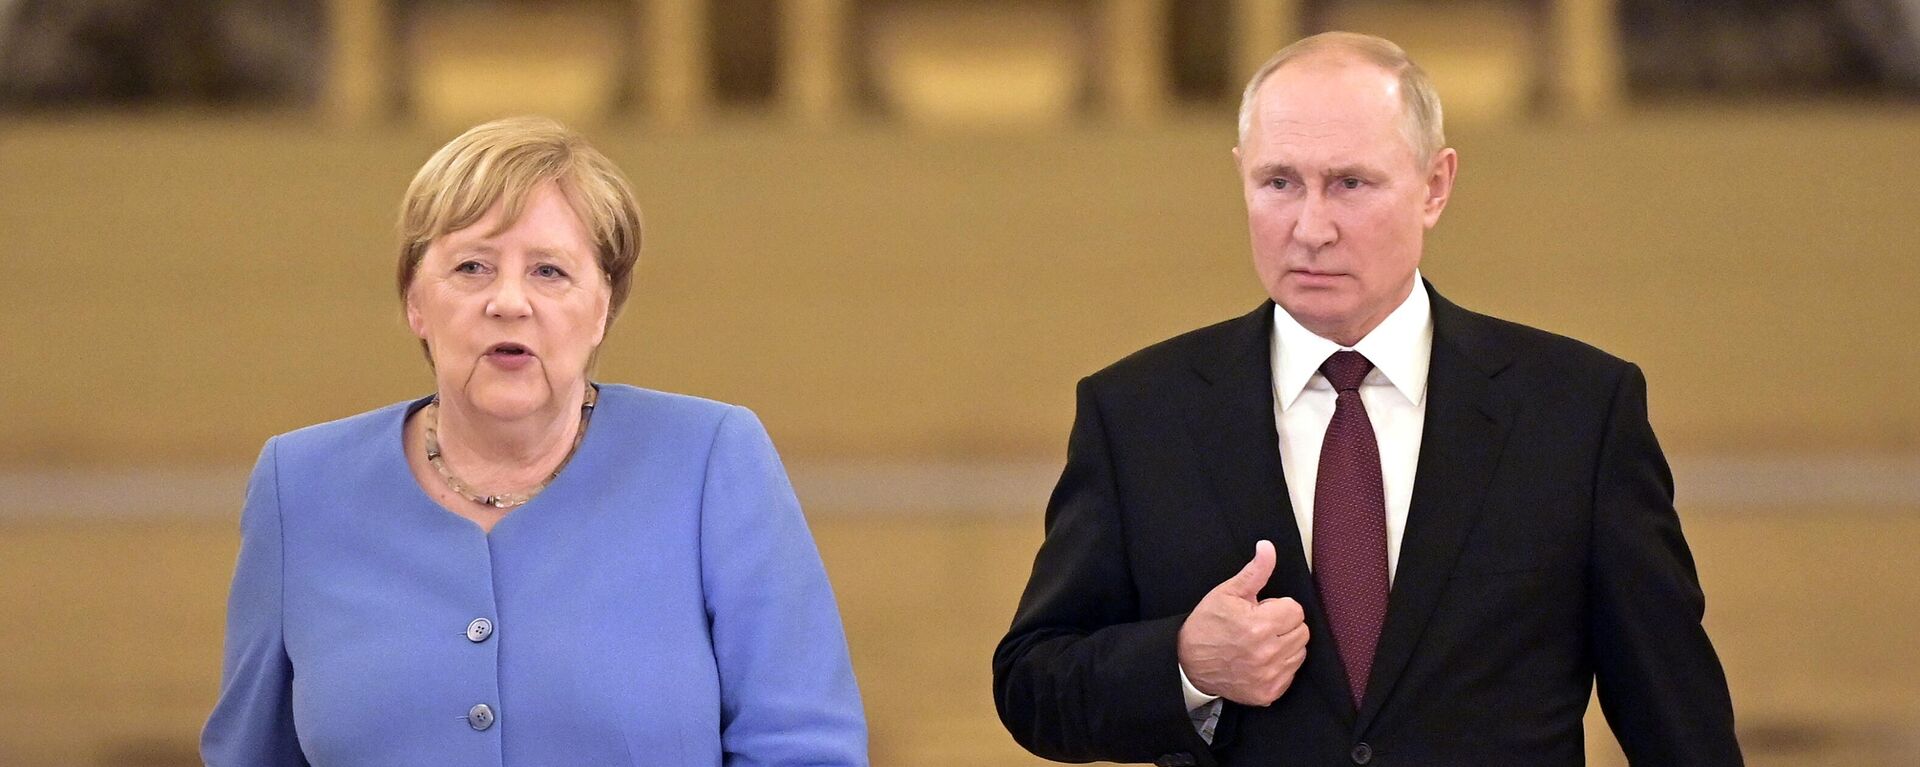 Krievijas prezidenta Vladimira Putina un Vācijas kancleres Angelas Merkeles tikšanās  Maskavā - Sputnik Latvija, 1920, 21.08.2021